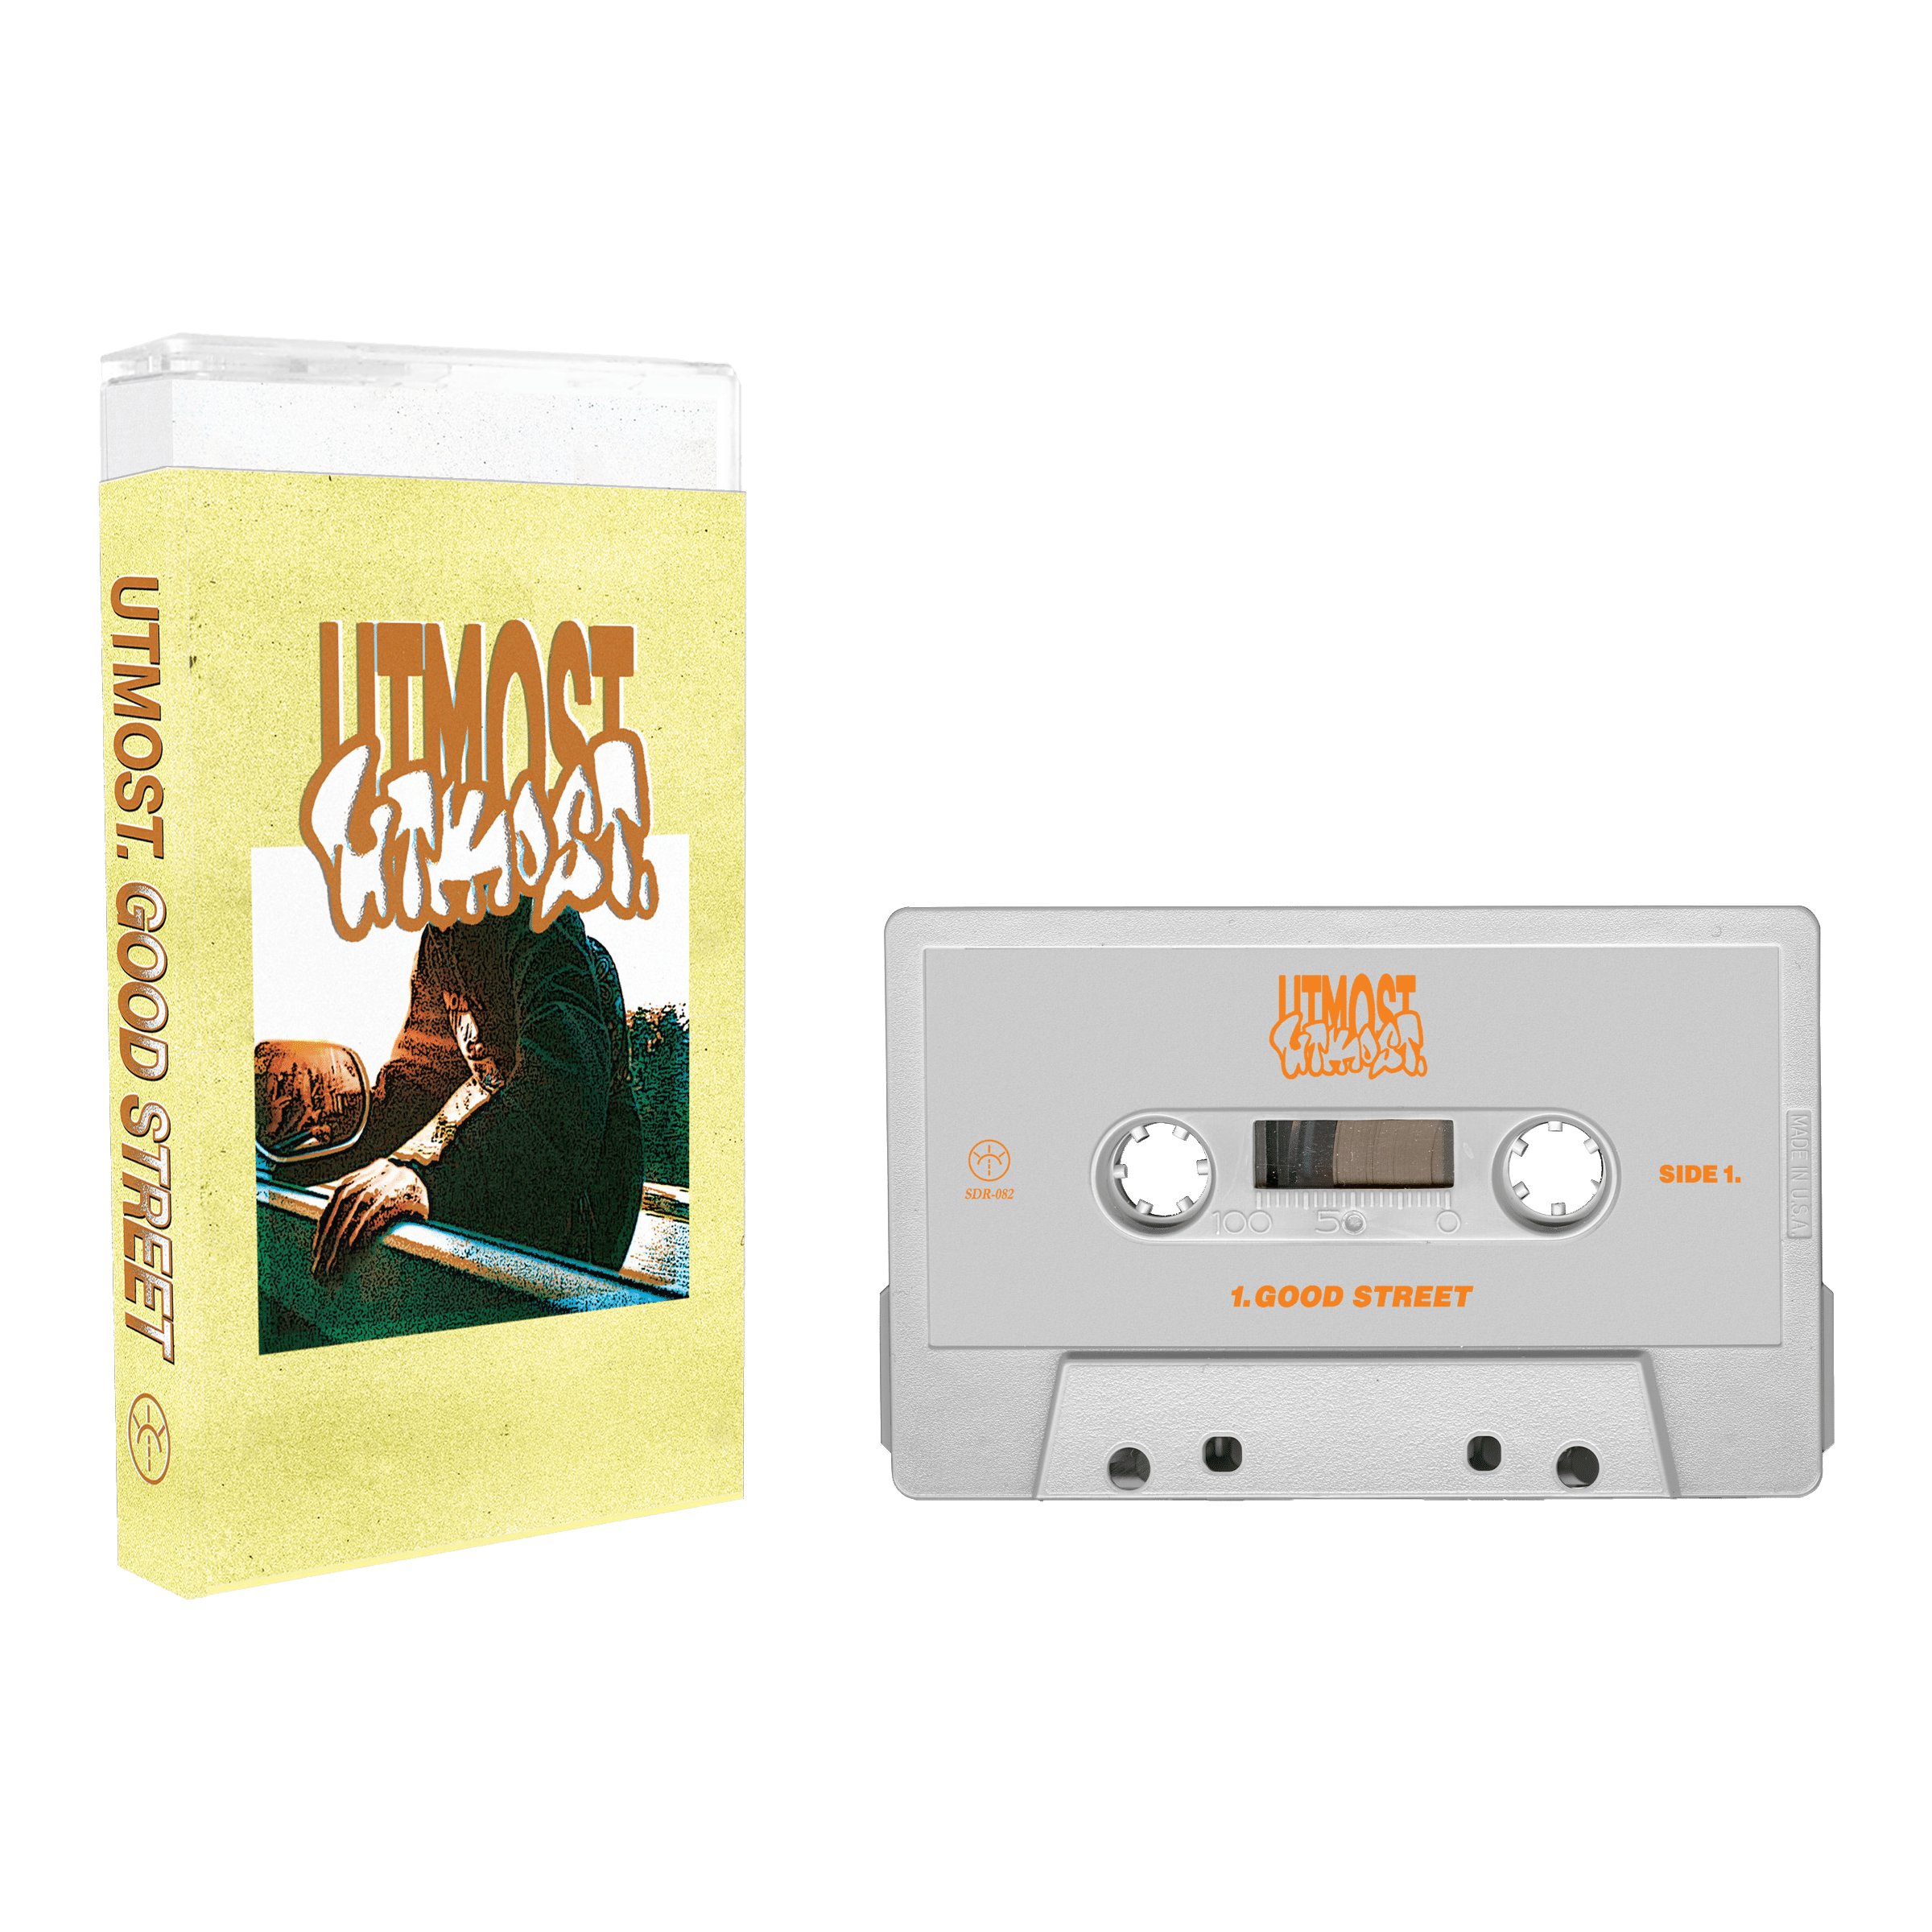 utmost - good street - cassette - white.png